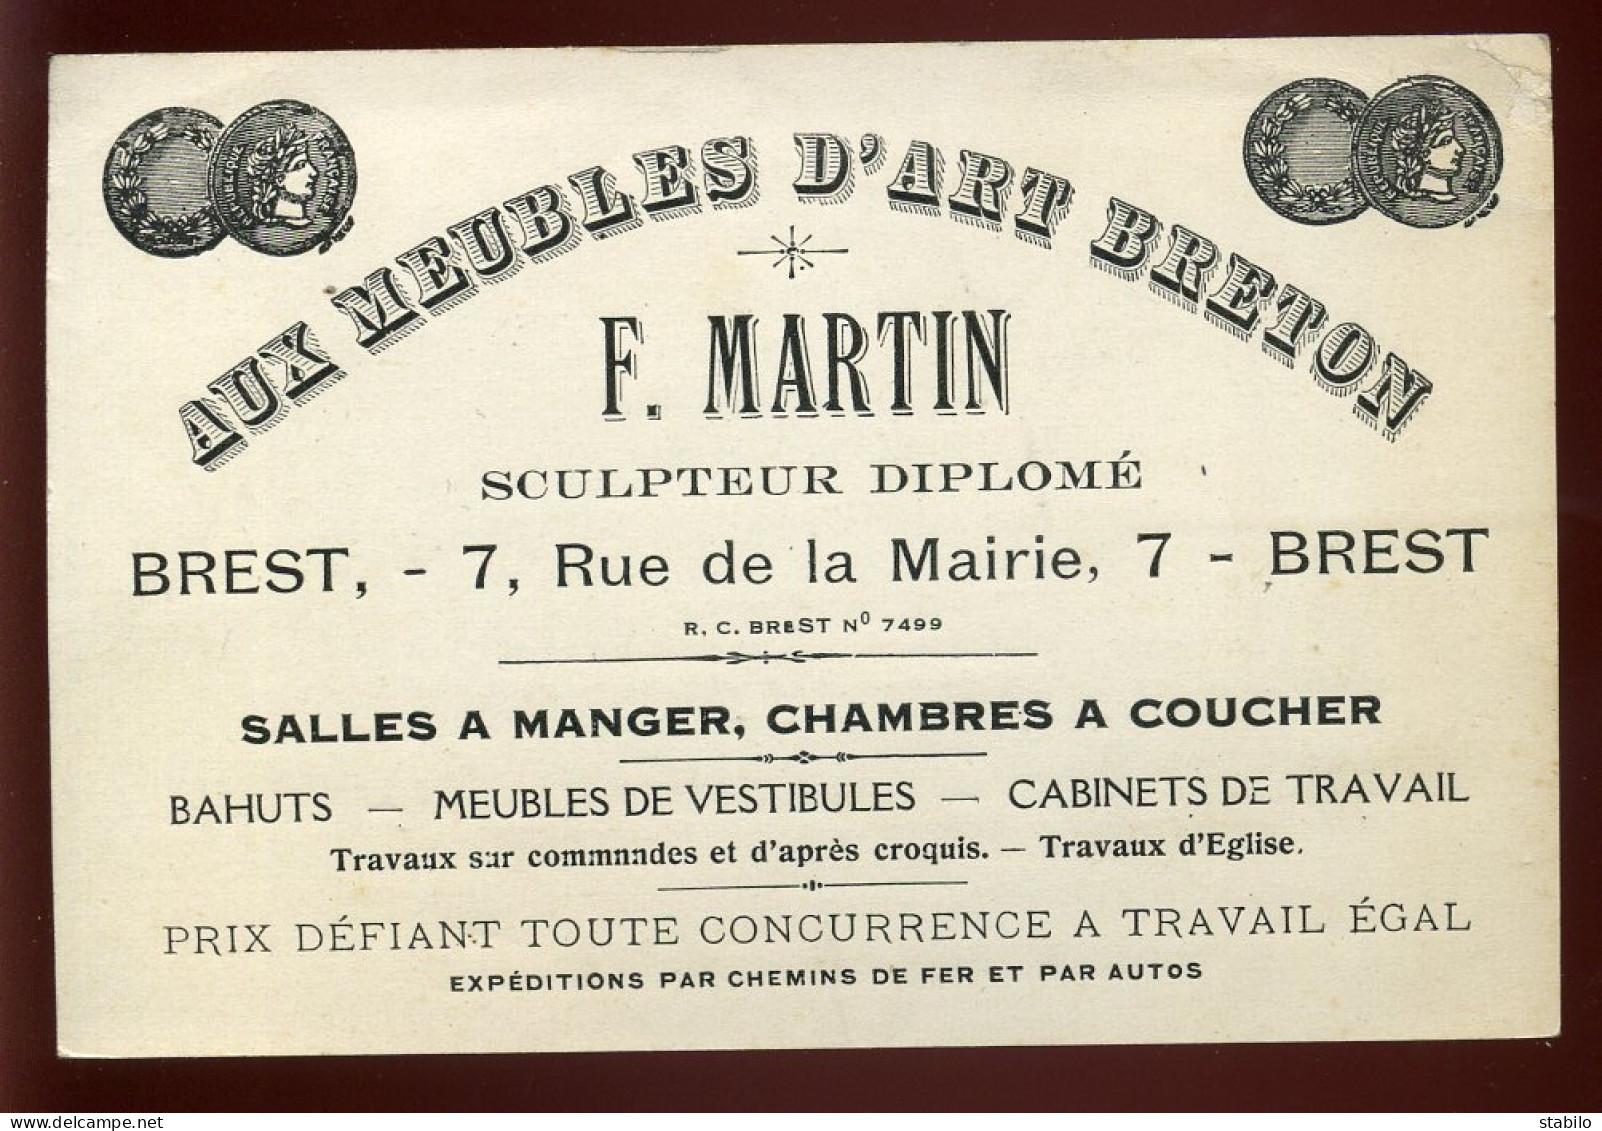 CARTE DE VISITE - BREST - MEUBLES D'ART BRETON F. MARTIN SCULPTEUR - 7 RUE DE LA MAIRIE - Visitekaartjes